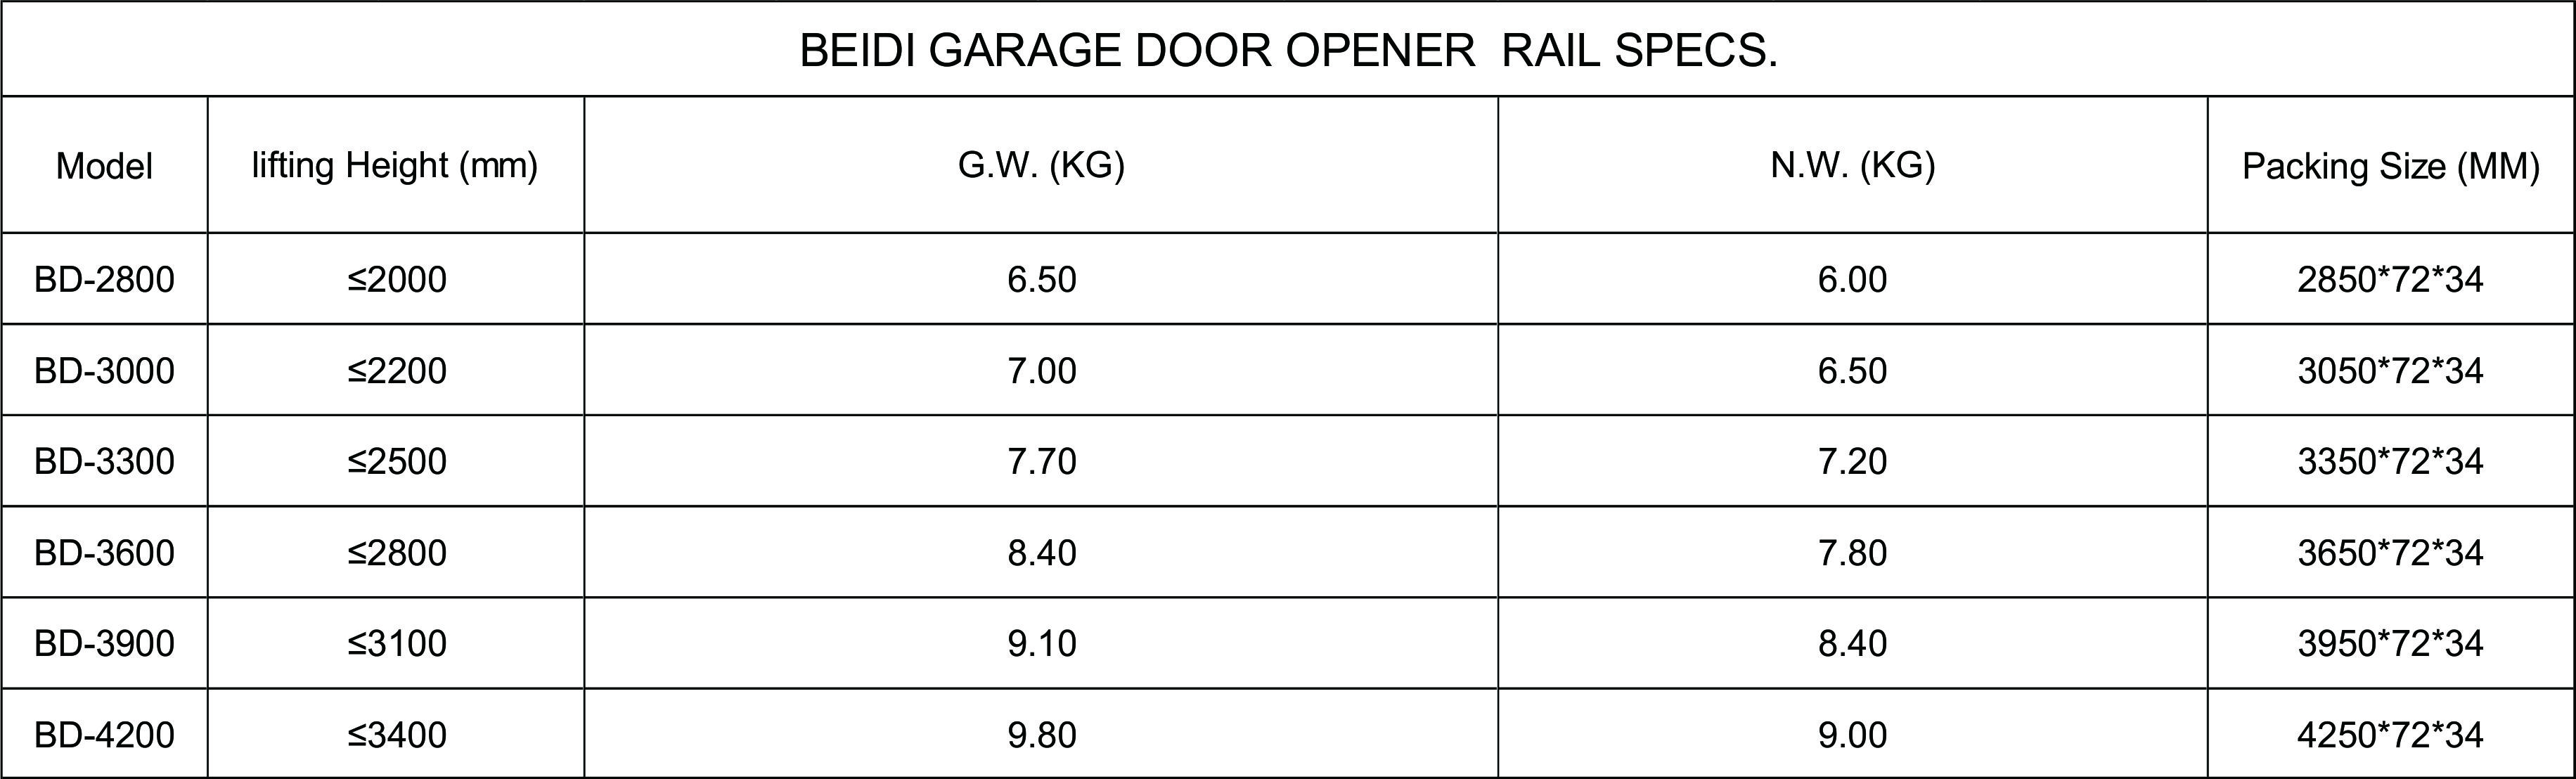 QUICK DETAILS FOR garage door opener rail